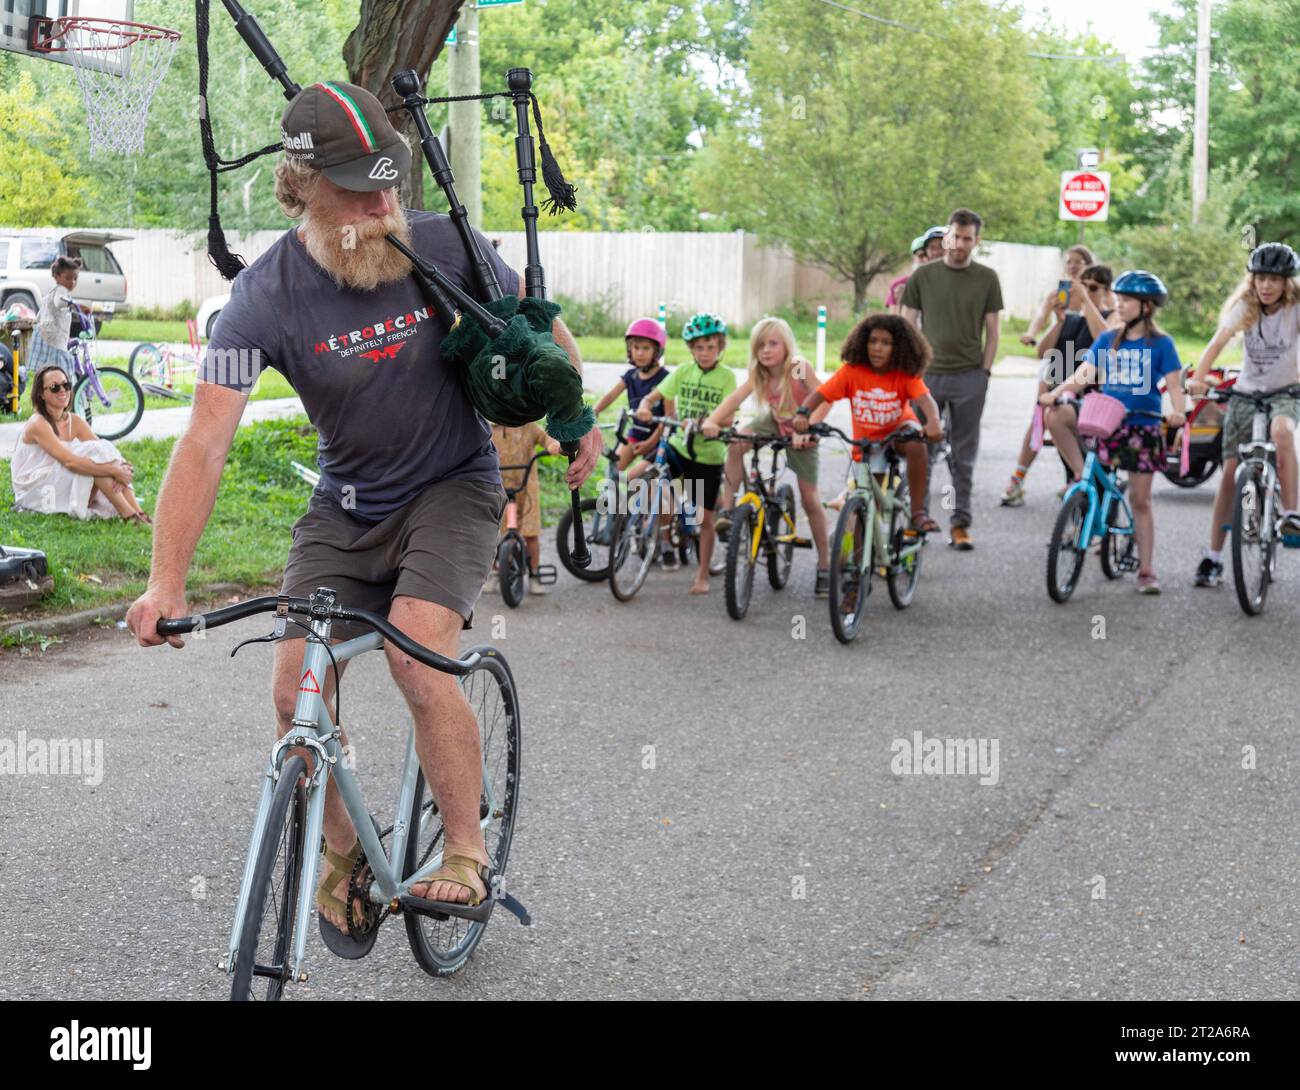 Detroit, Michigan - Un bagpiper joue au début du Farnsworth Criterium, une parade et une course à vélo pour enfants sur et autour de Farnsworth Street Banque D'Images